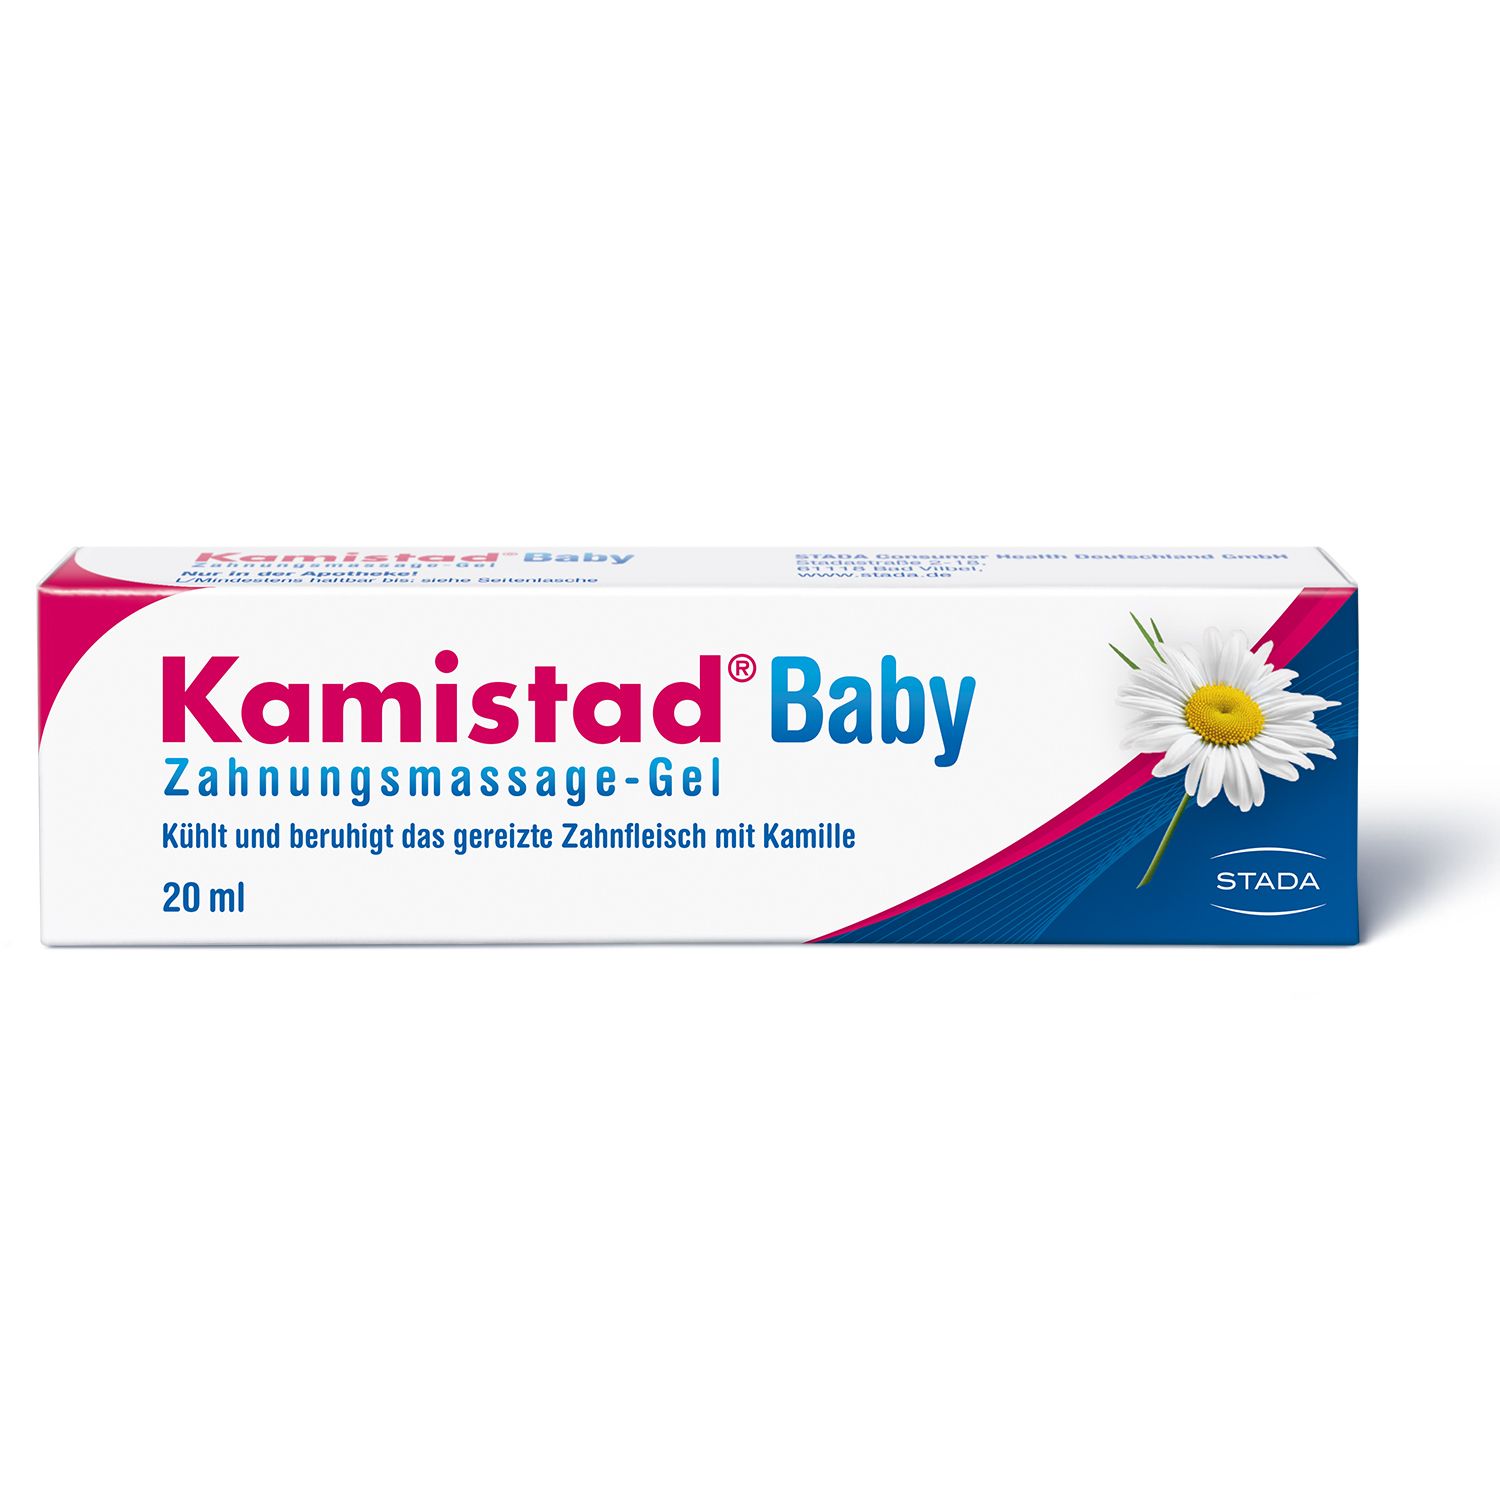 Kamistad® Baby für zahnende Babys